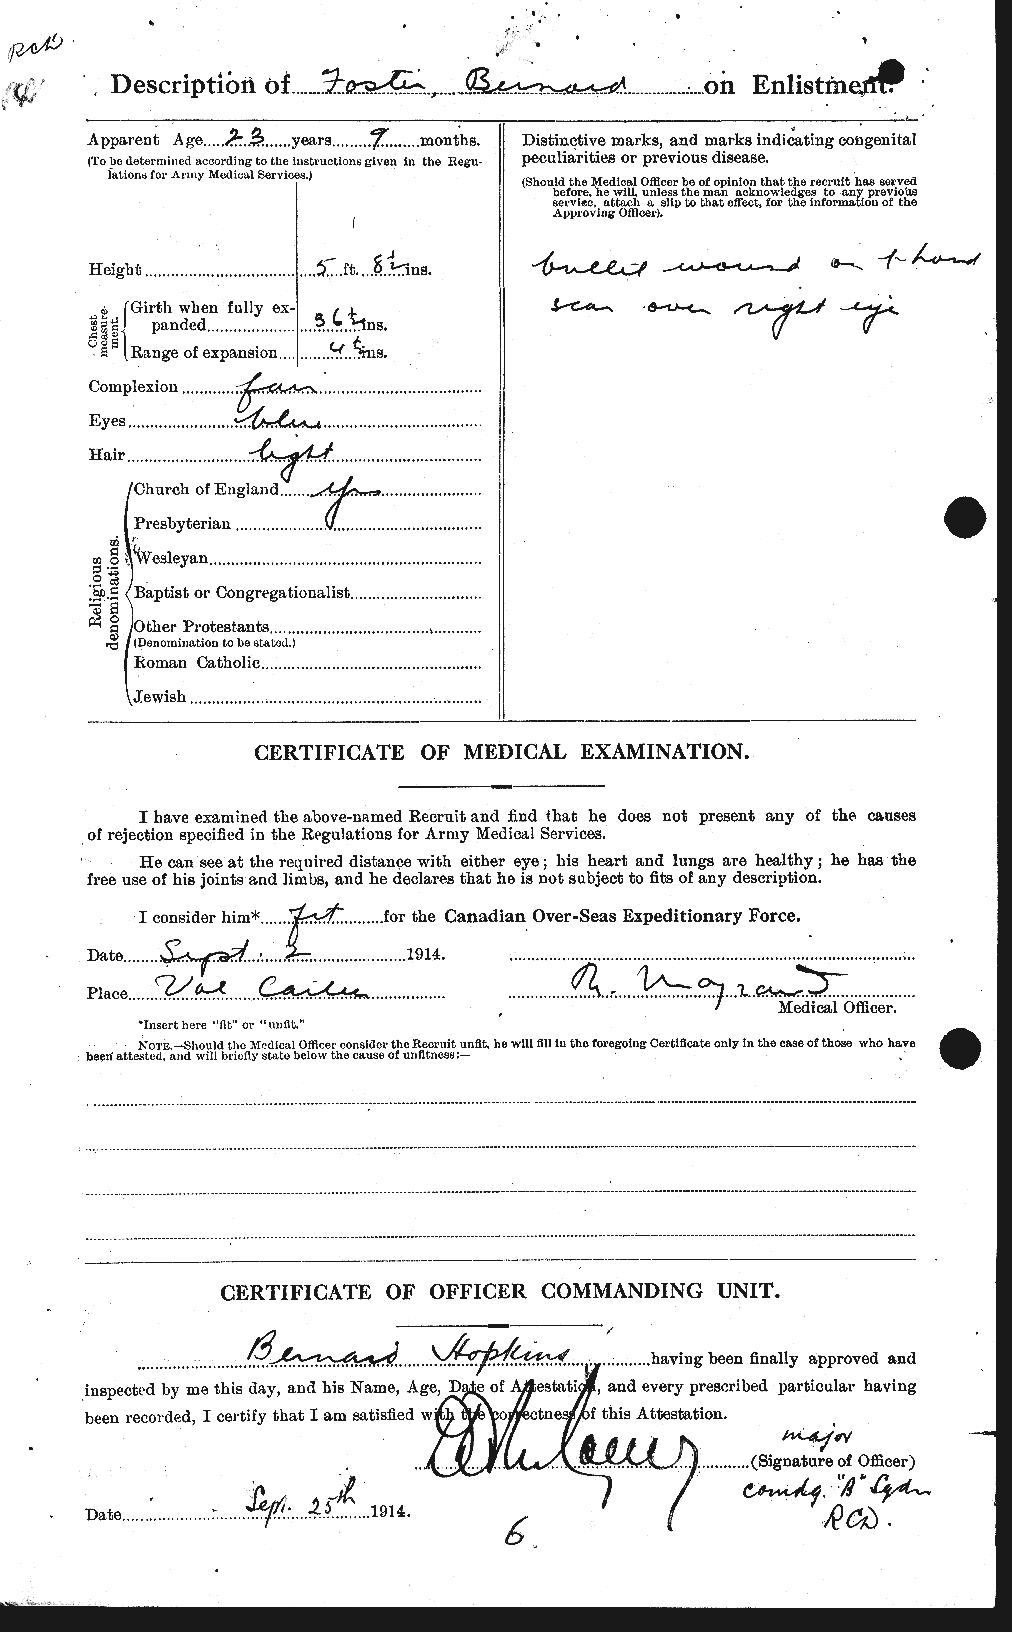 Dossiers du Personnel de la Première Guerre mondiale - CEC 330486b